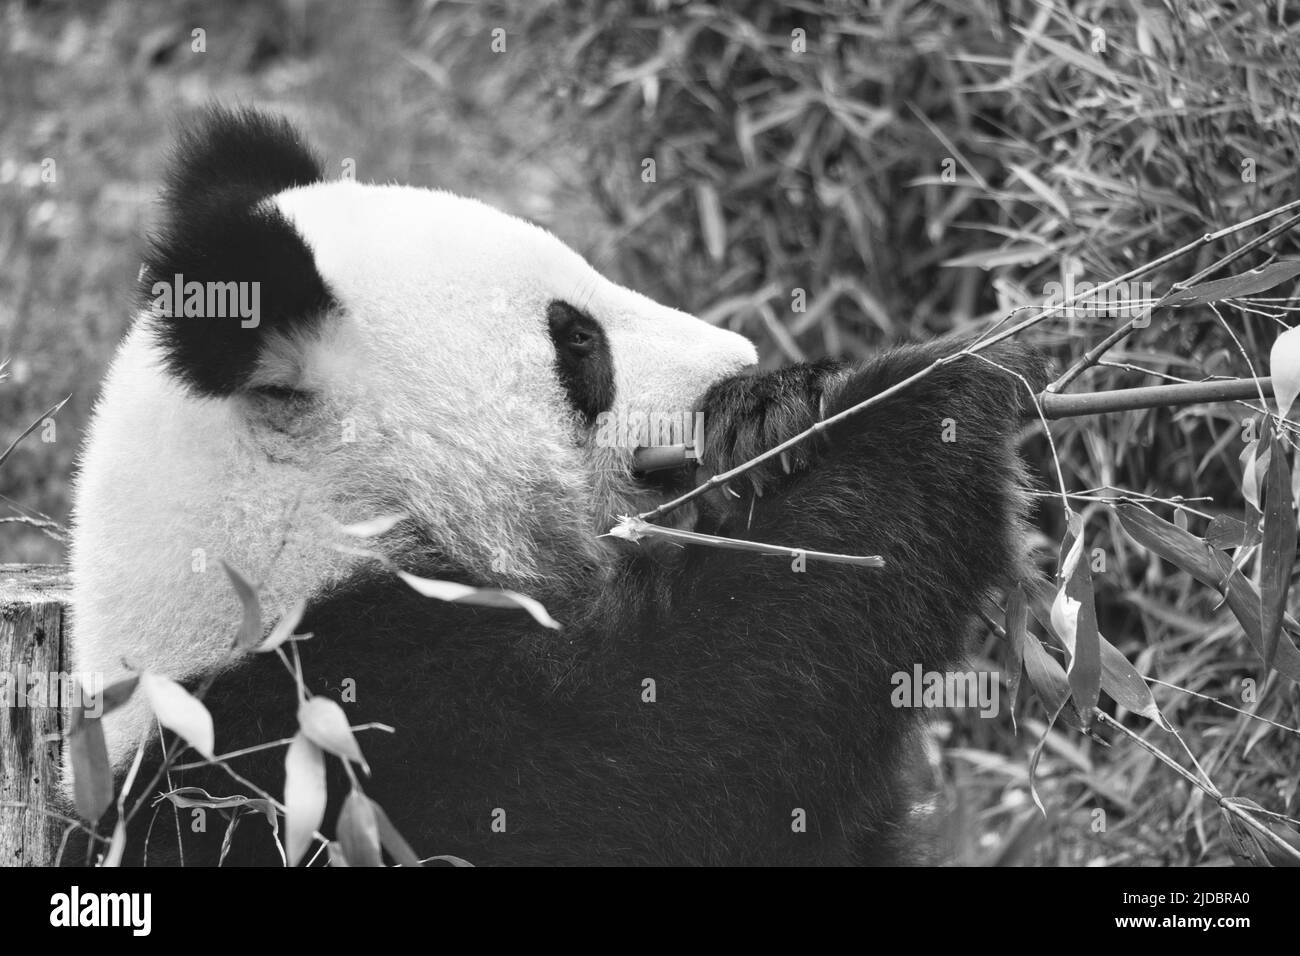 panda grande in bianco e nero, seduto mangiare bambù. Specie in pericolo. Mammifero bianco e nero che assomiglia ad un orsacchiotto. Foto profonda di una rara bea Foto Stock